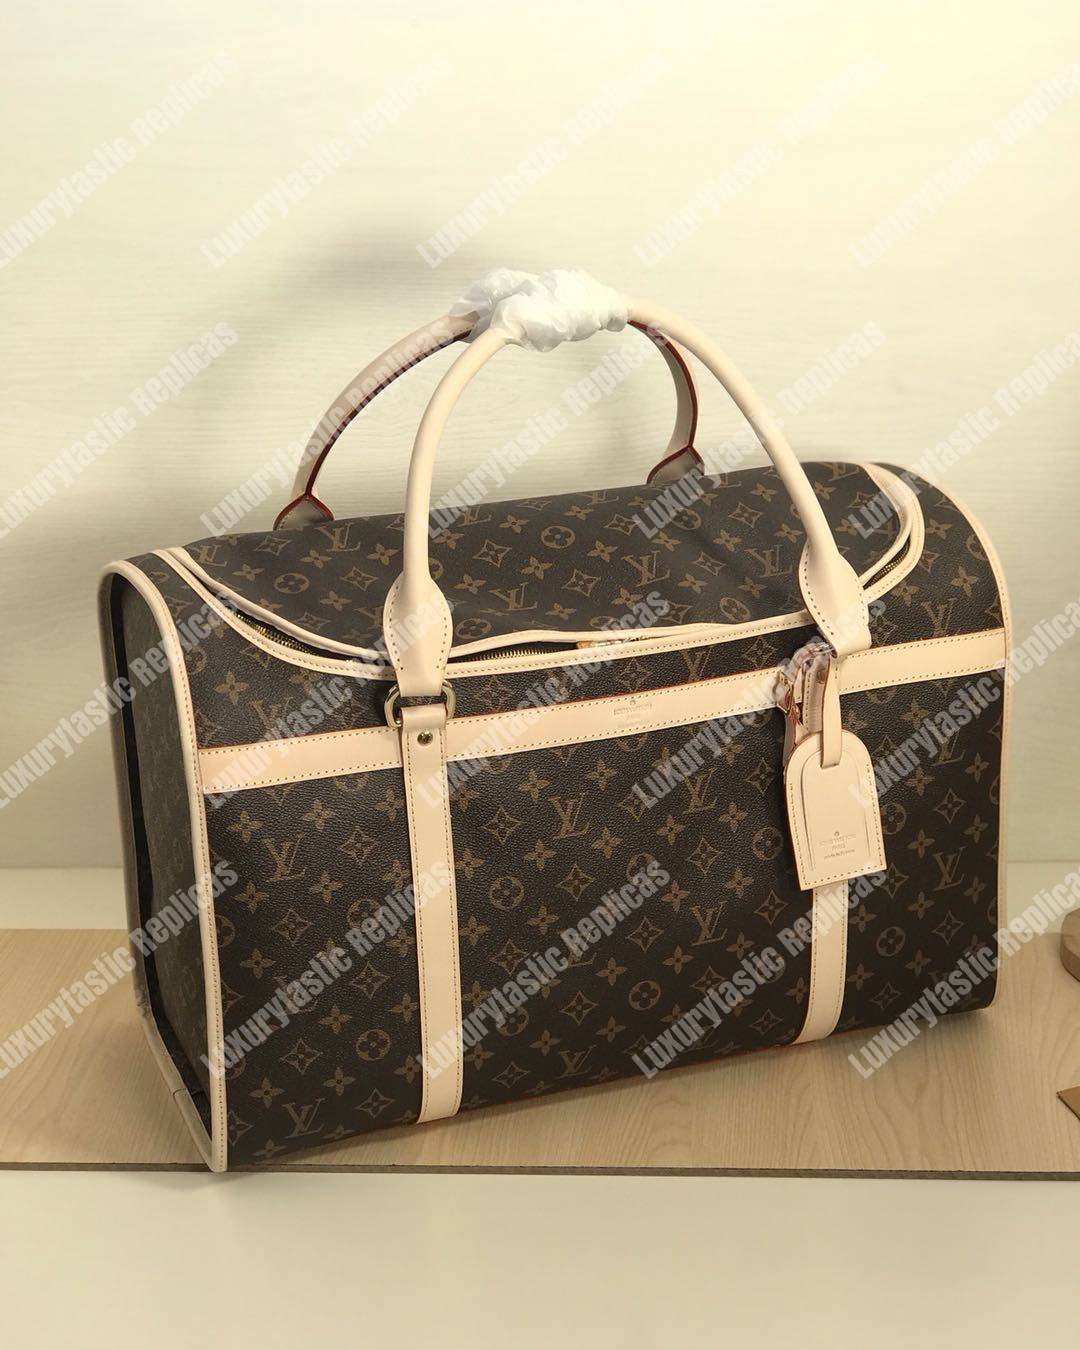 Replica Louis Vuitton Wild Puppet Alma Dog Bag Charm en sleutelhouder te  koop met goedkope prijs bij Fake Bag Store